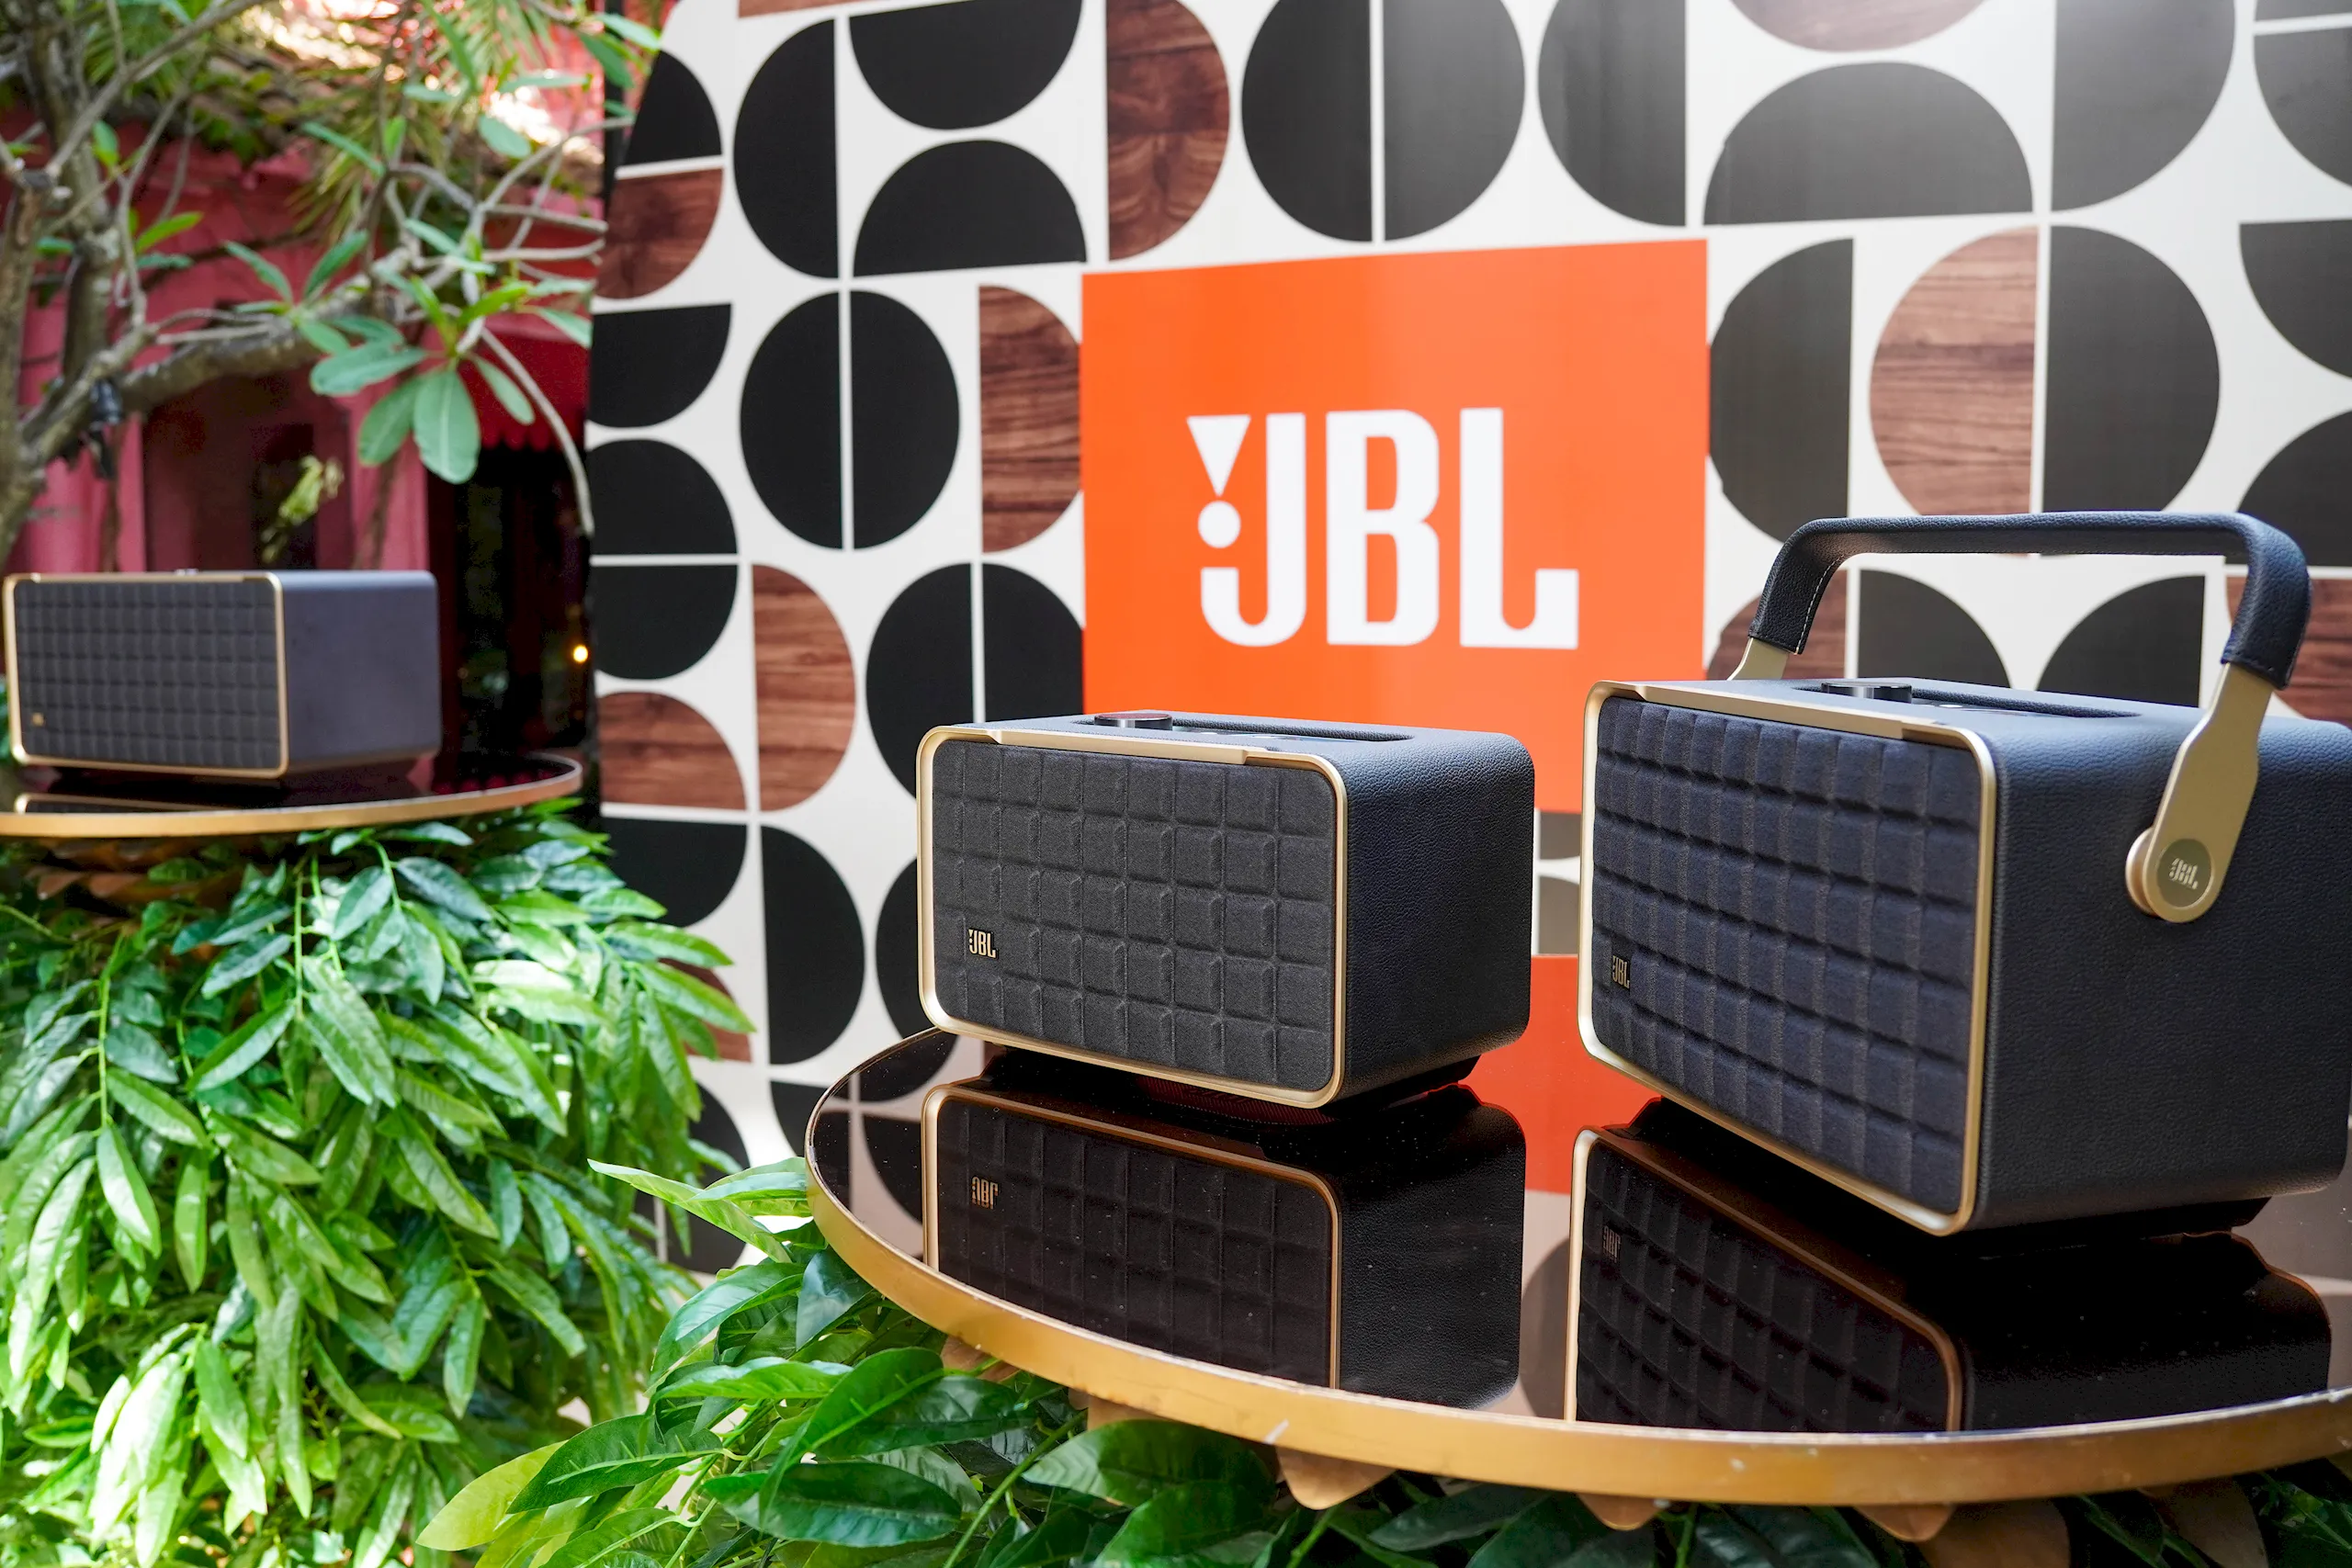 JBL mở bán dòng loa Authentics và đầu đĩa than Spinner BT với thiết kế cổ điển kết hợp các chức năng thông minh